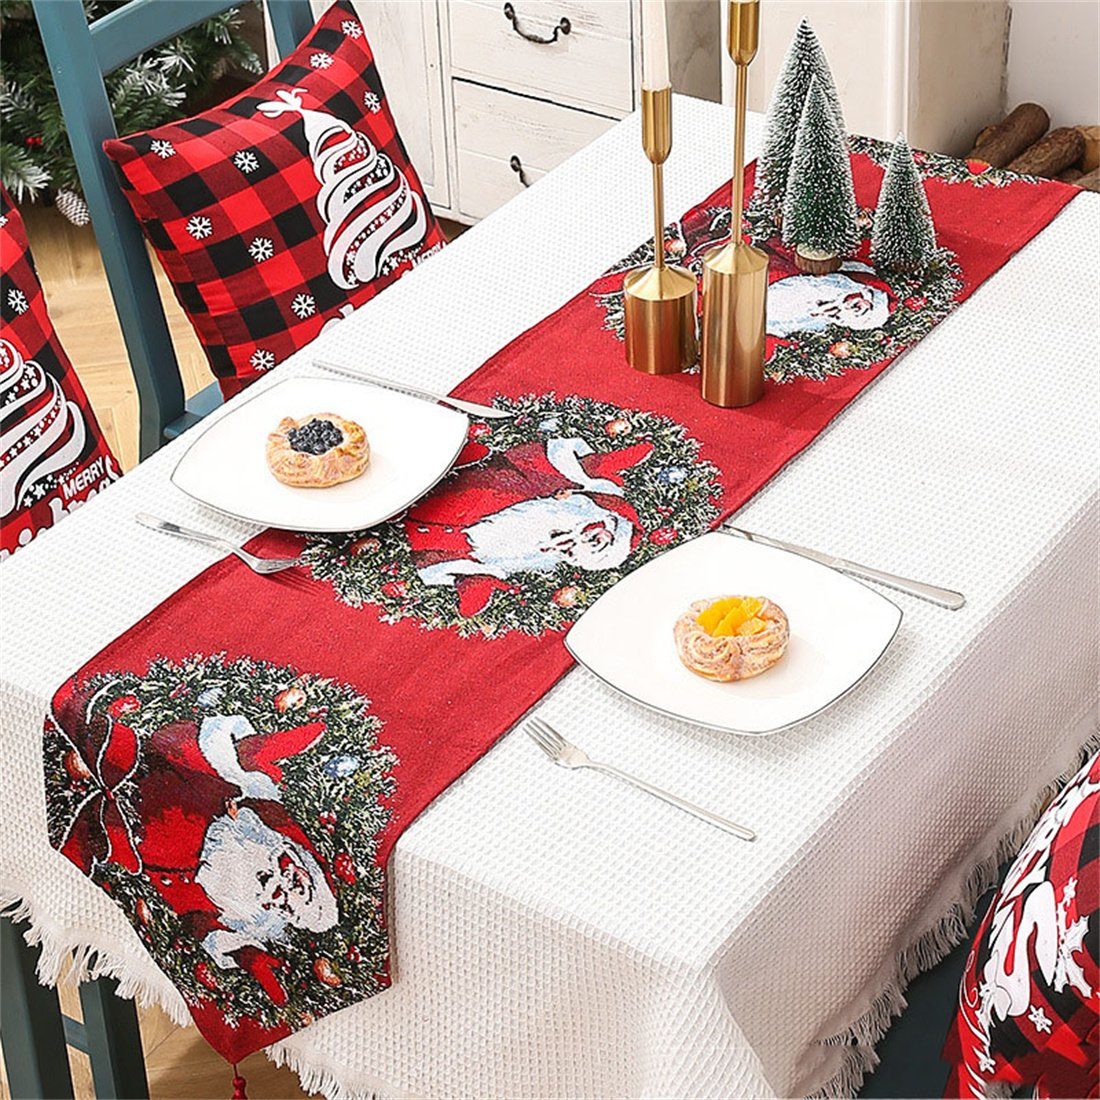 Tischdekoration bedruckte Kreativ DÖRÖY Weihnachten Tischfahnen, Tischläufer Festliche